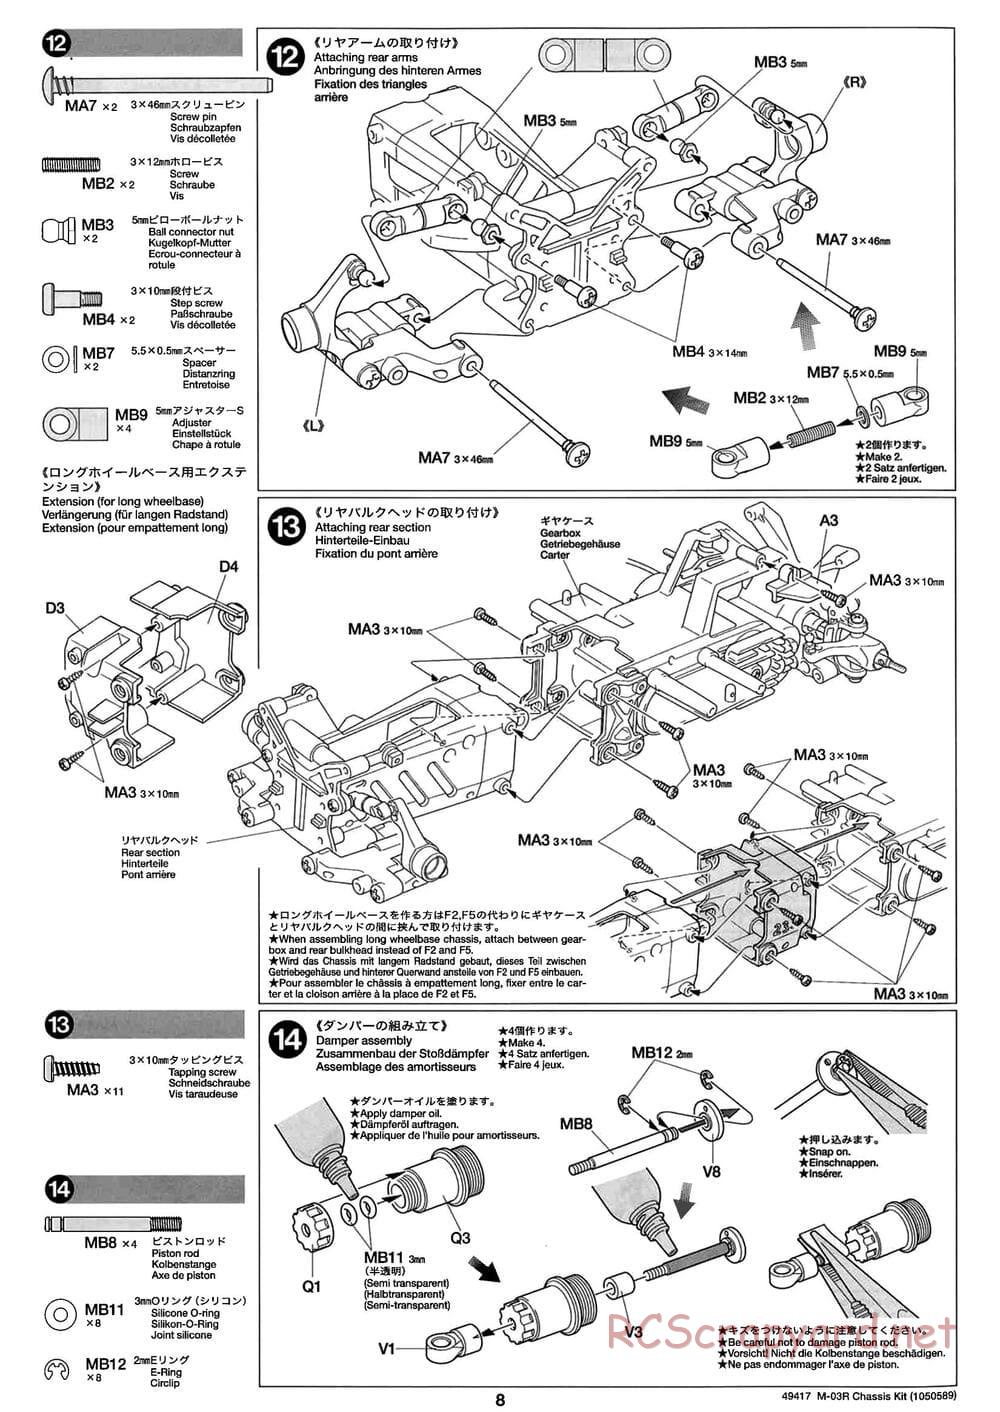 Tamiya - M-03R Chassis - Manual - Page 8